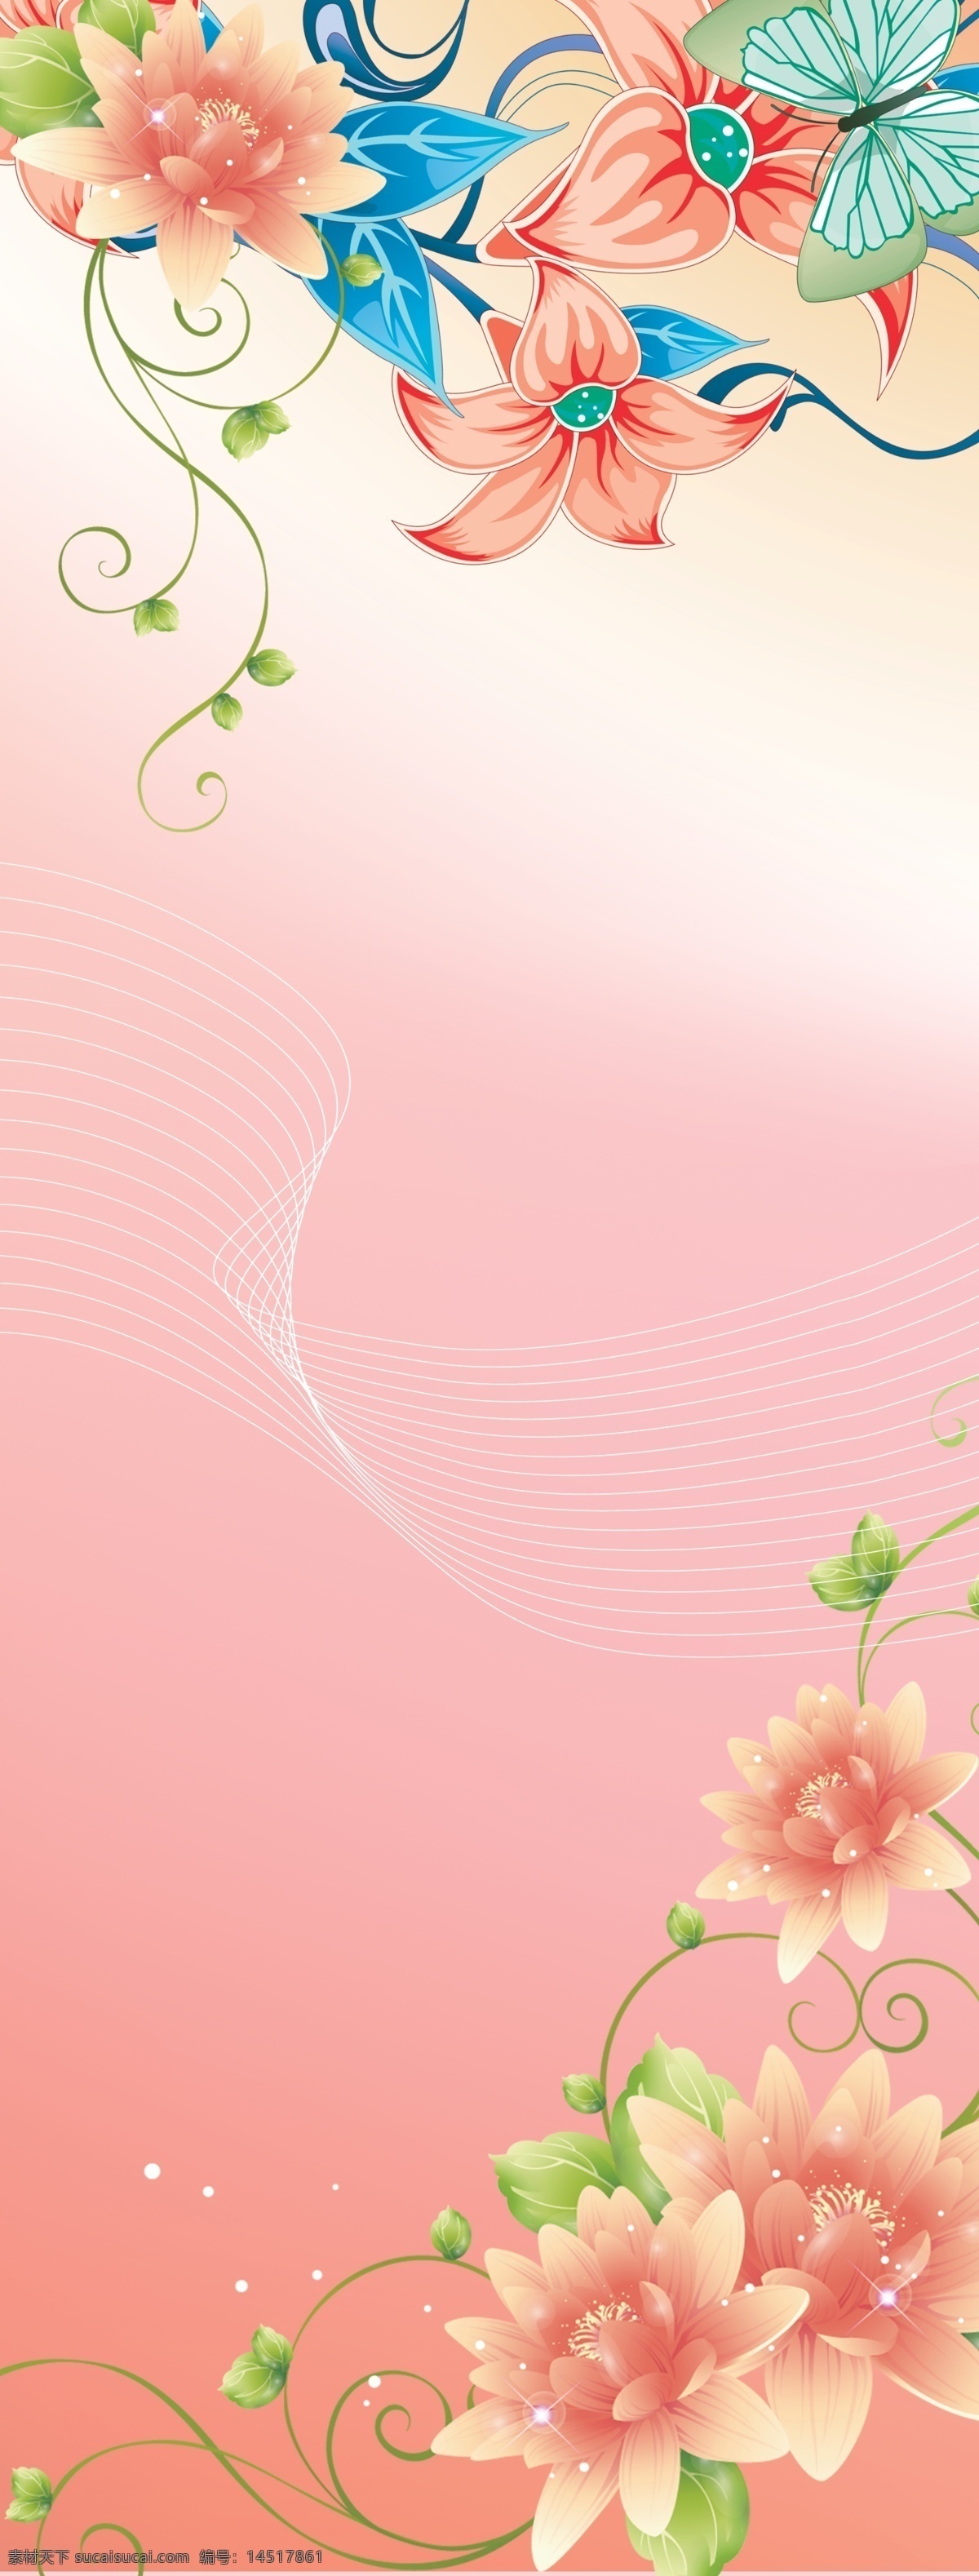 鲜花展架背景 鲜花 粉红 展架 背景 底 展板模板